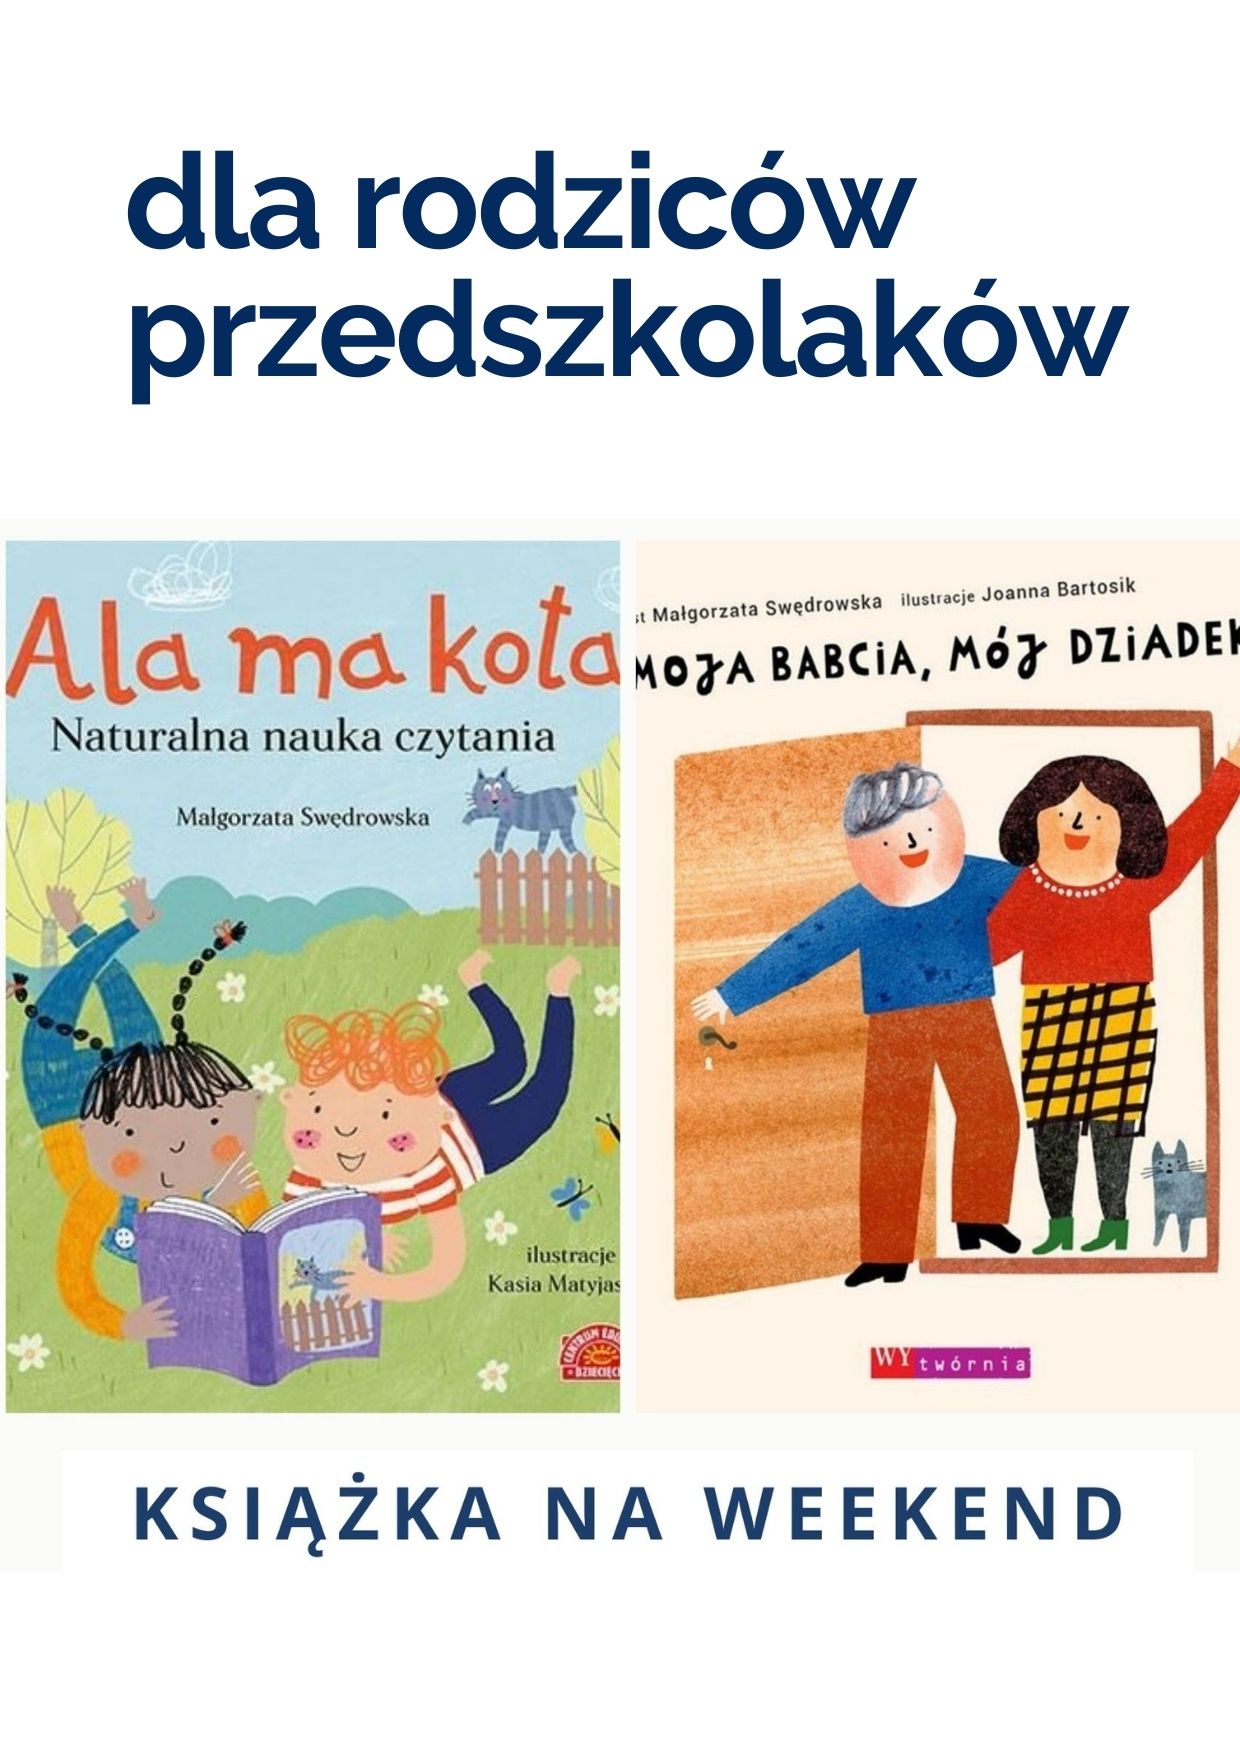 Książka na weekend - dla przedszkolaków i ich rodziców: prezentacje z propozycjami książek 